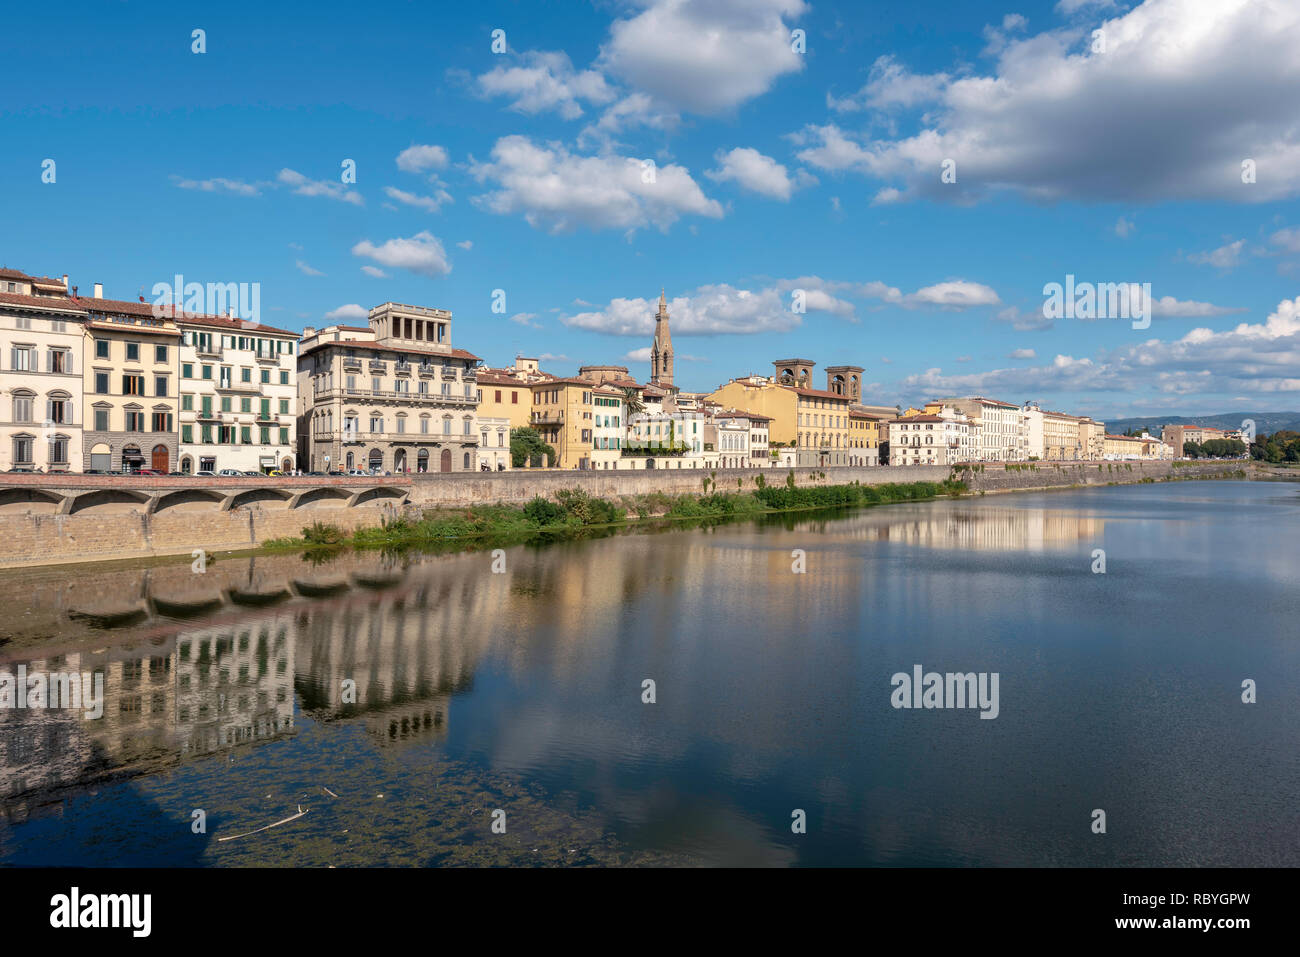 Afficher le long de la rivière Arno, Florence, Italie Banque D'Images